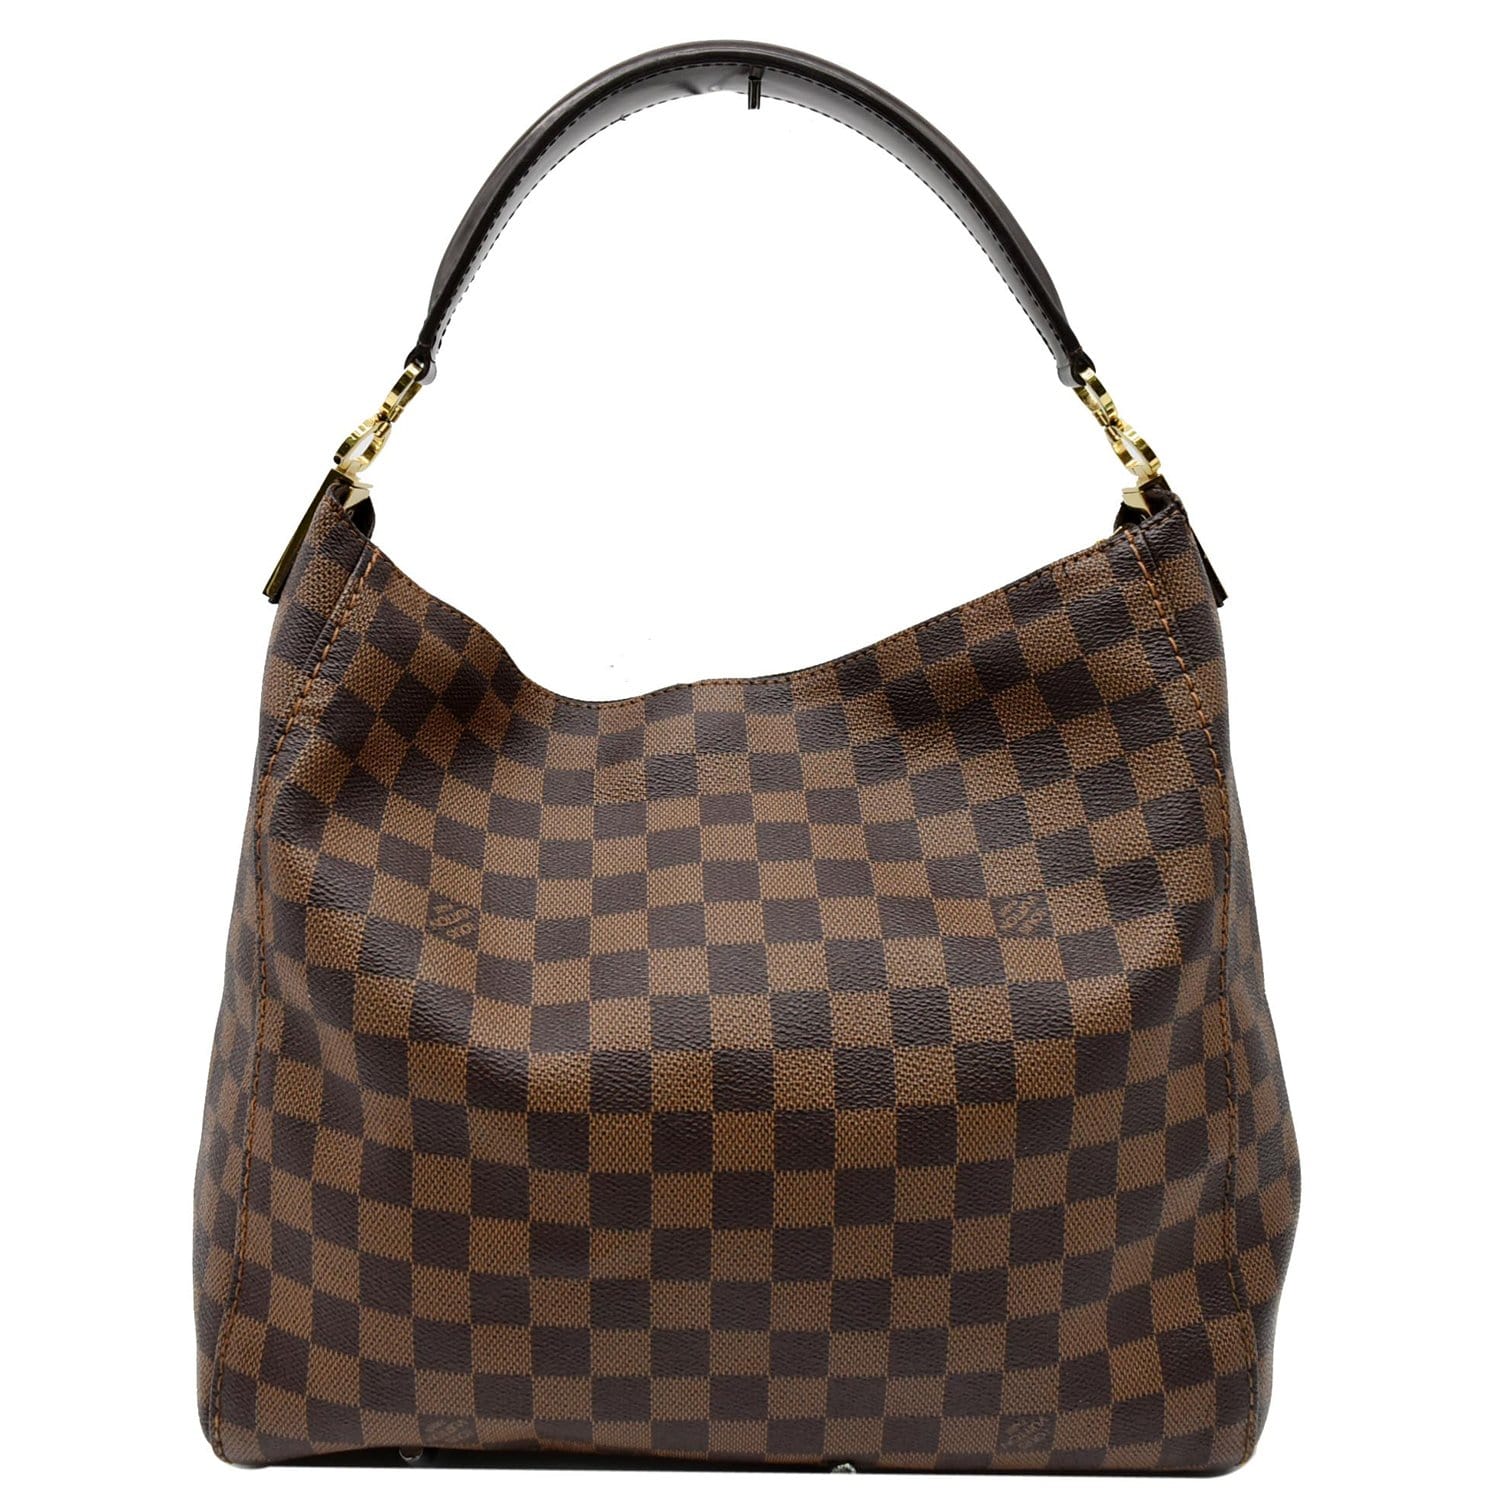 2012 Louis Vuitton Damier Ebene Leather Portobello Bag at 1stDibs